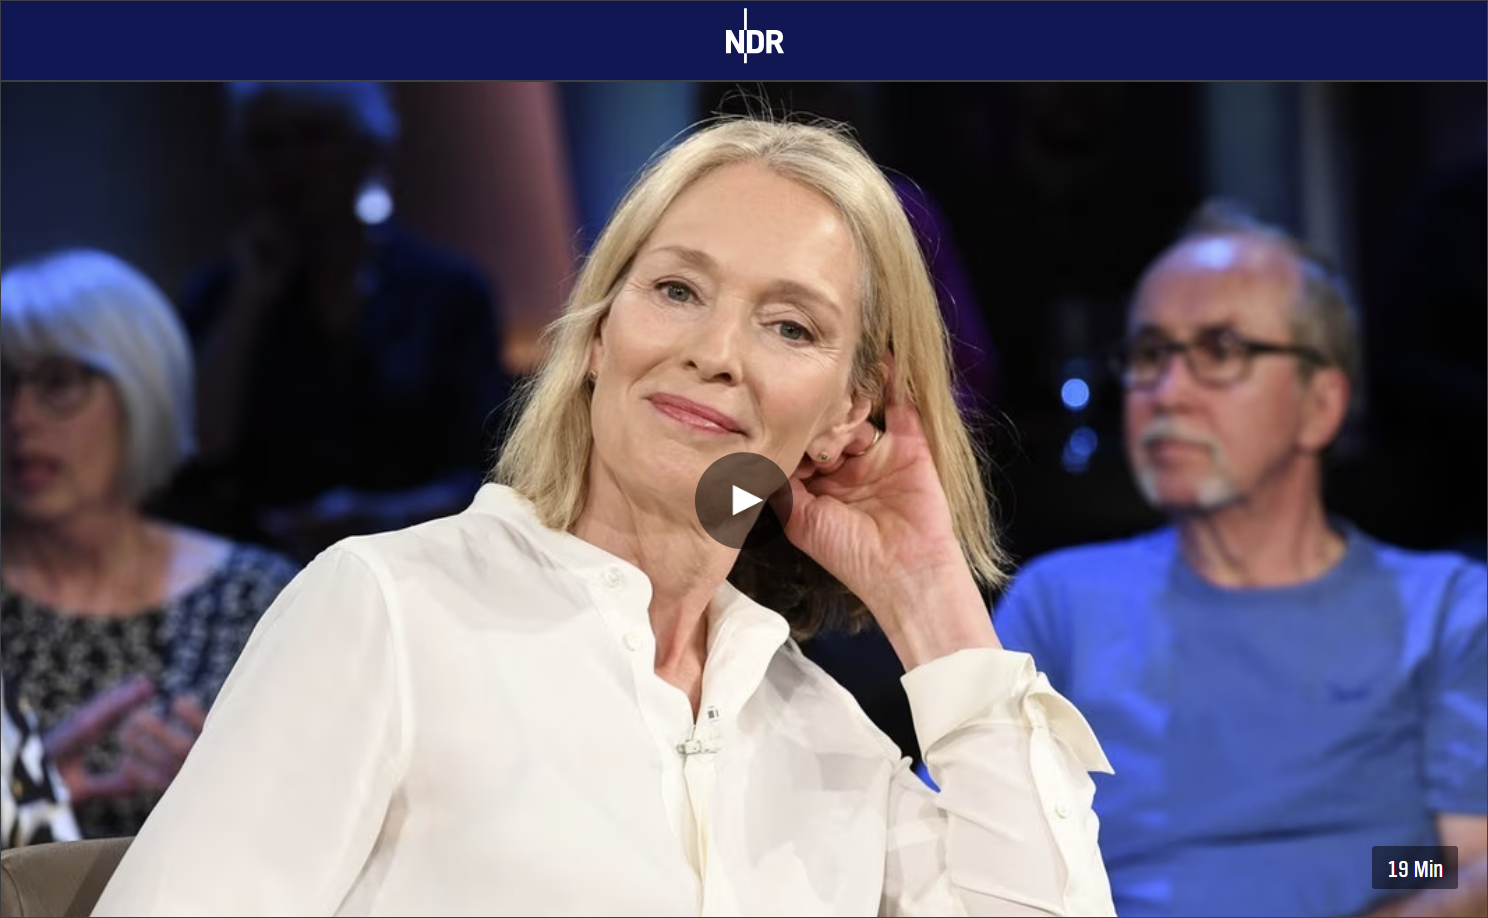 Katja Weitzenböck in der NDR Talk Show